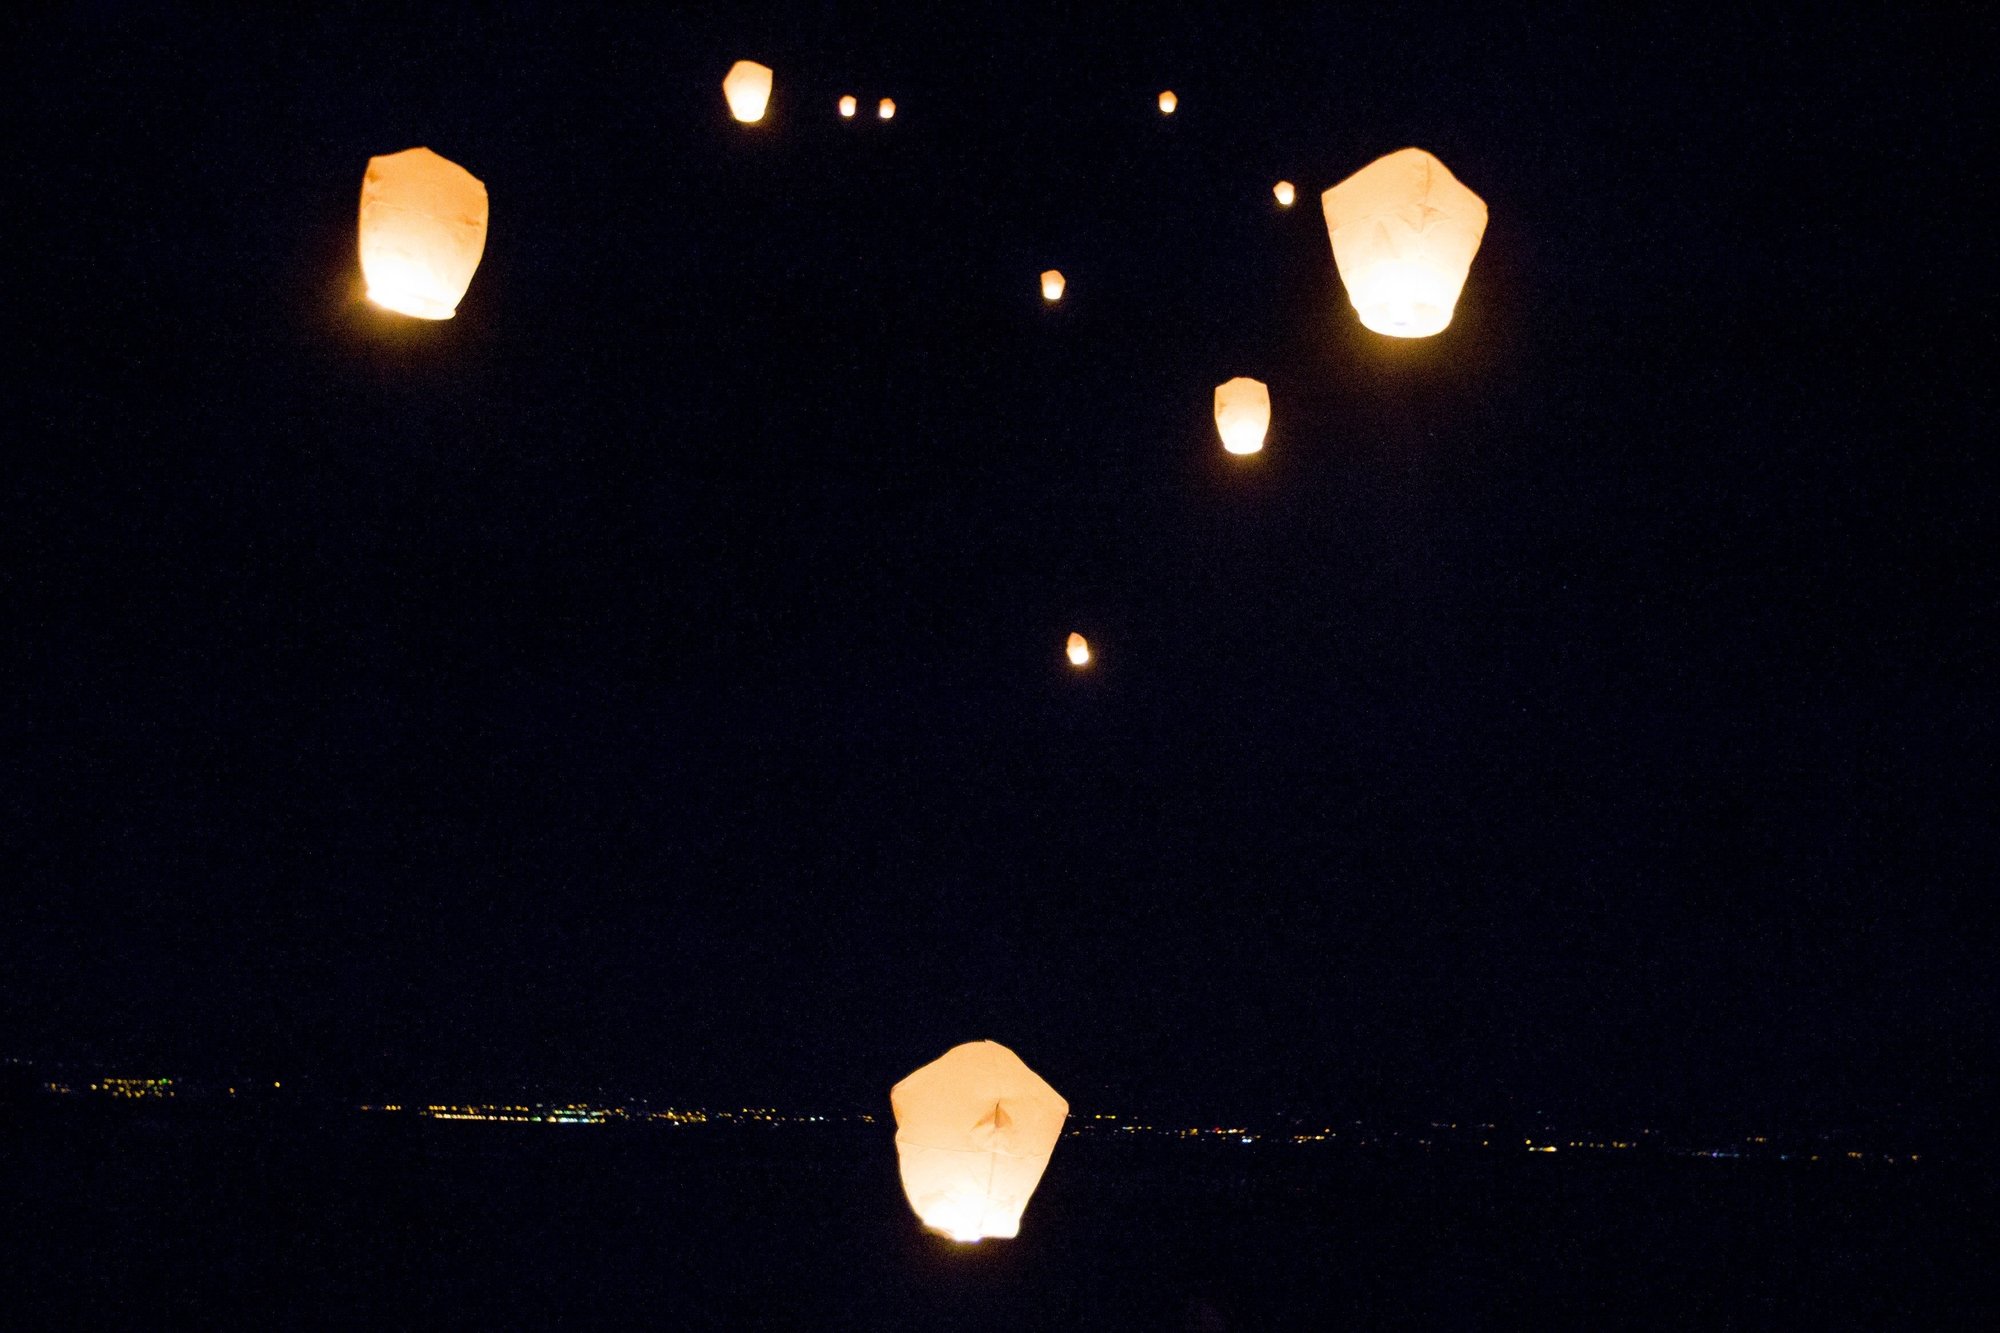 Ce jeudi soir à 20h, le ciel au-dessus d'Arzier-Le Muids devrait s'illuminer de dizaines de lanternes volantes destinées à remplacer la célébration de Noël villageoise.